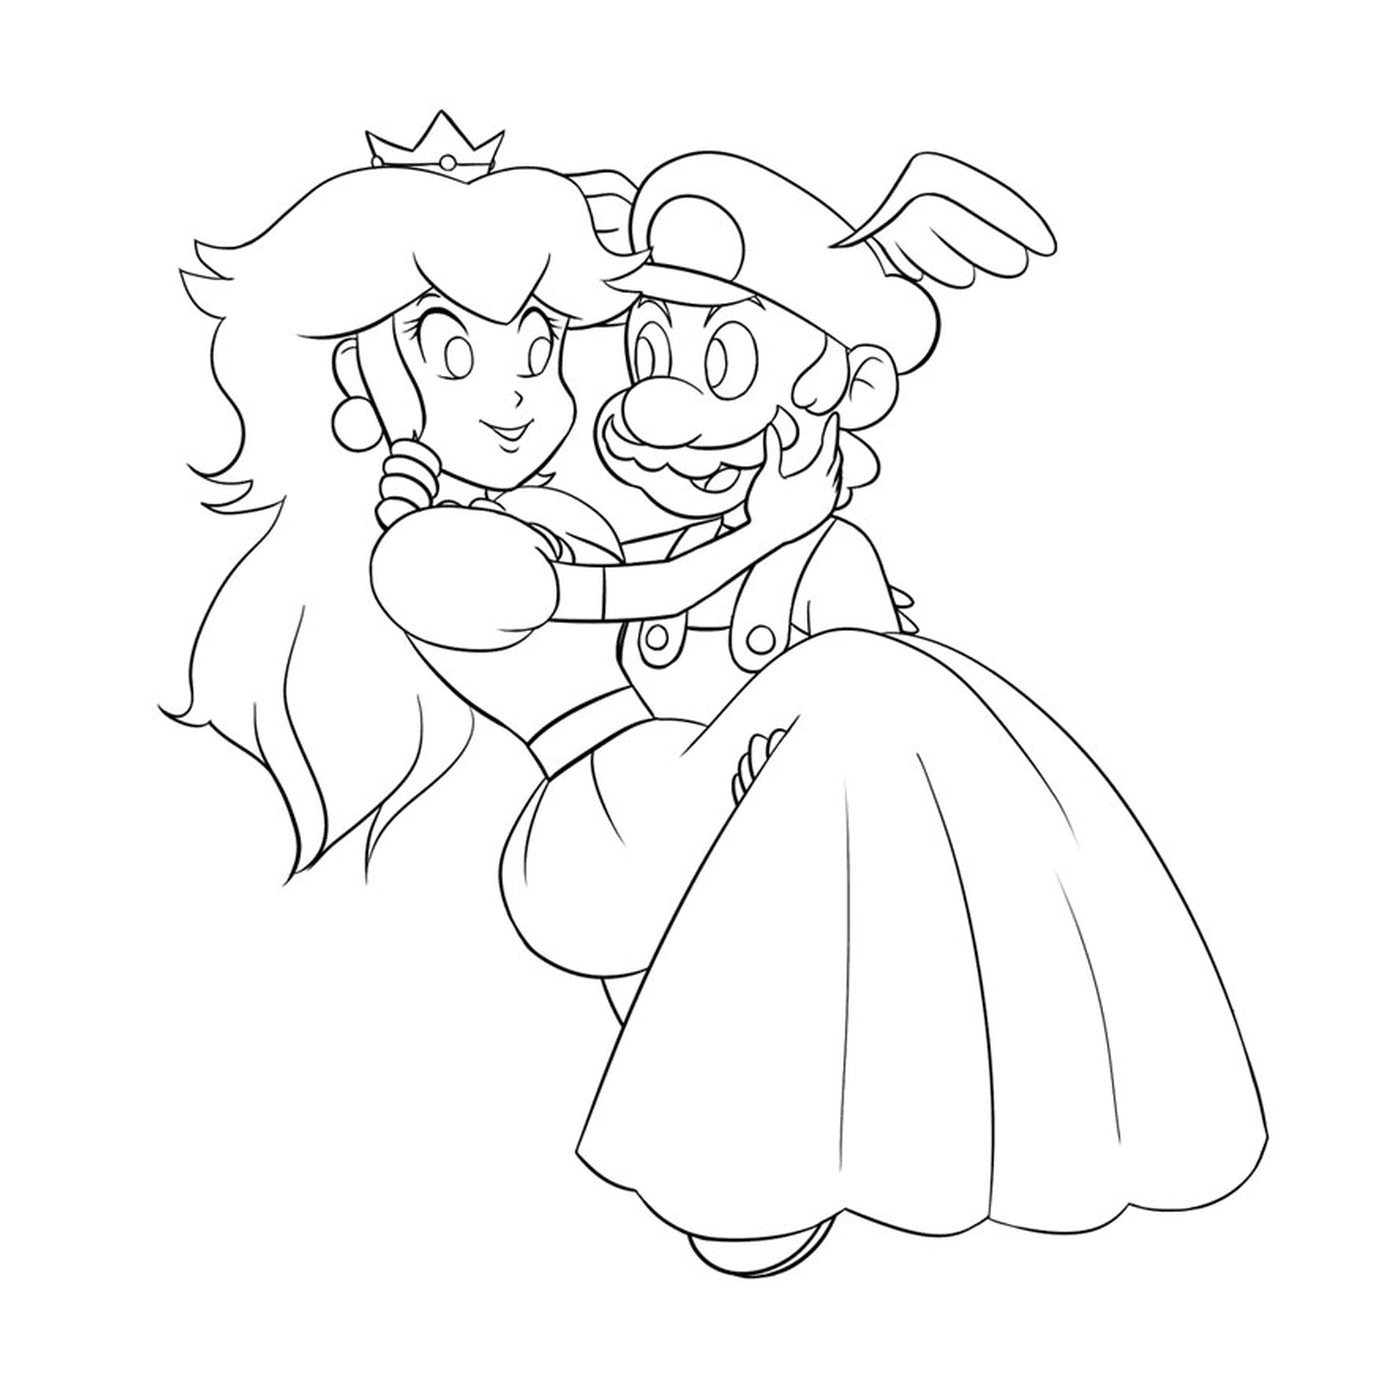  Mario und die Prinzessin 